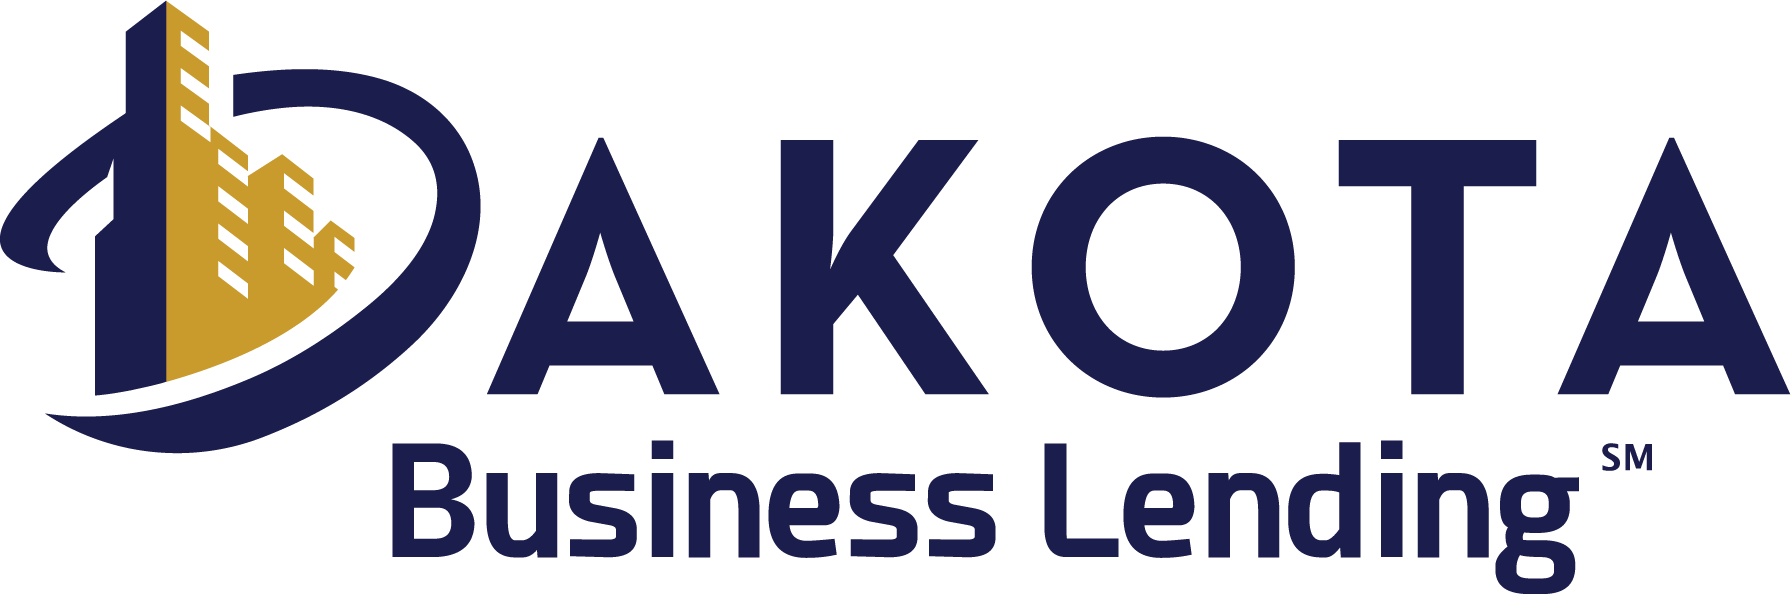 Dakota Business Lending logo